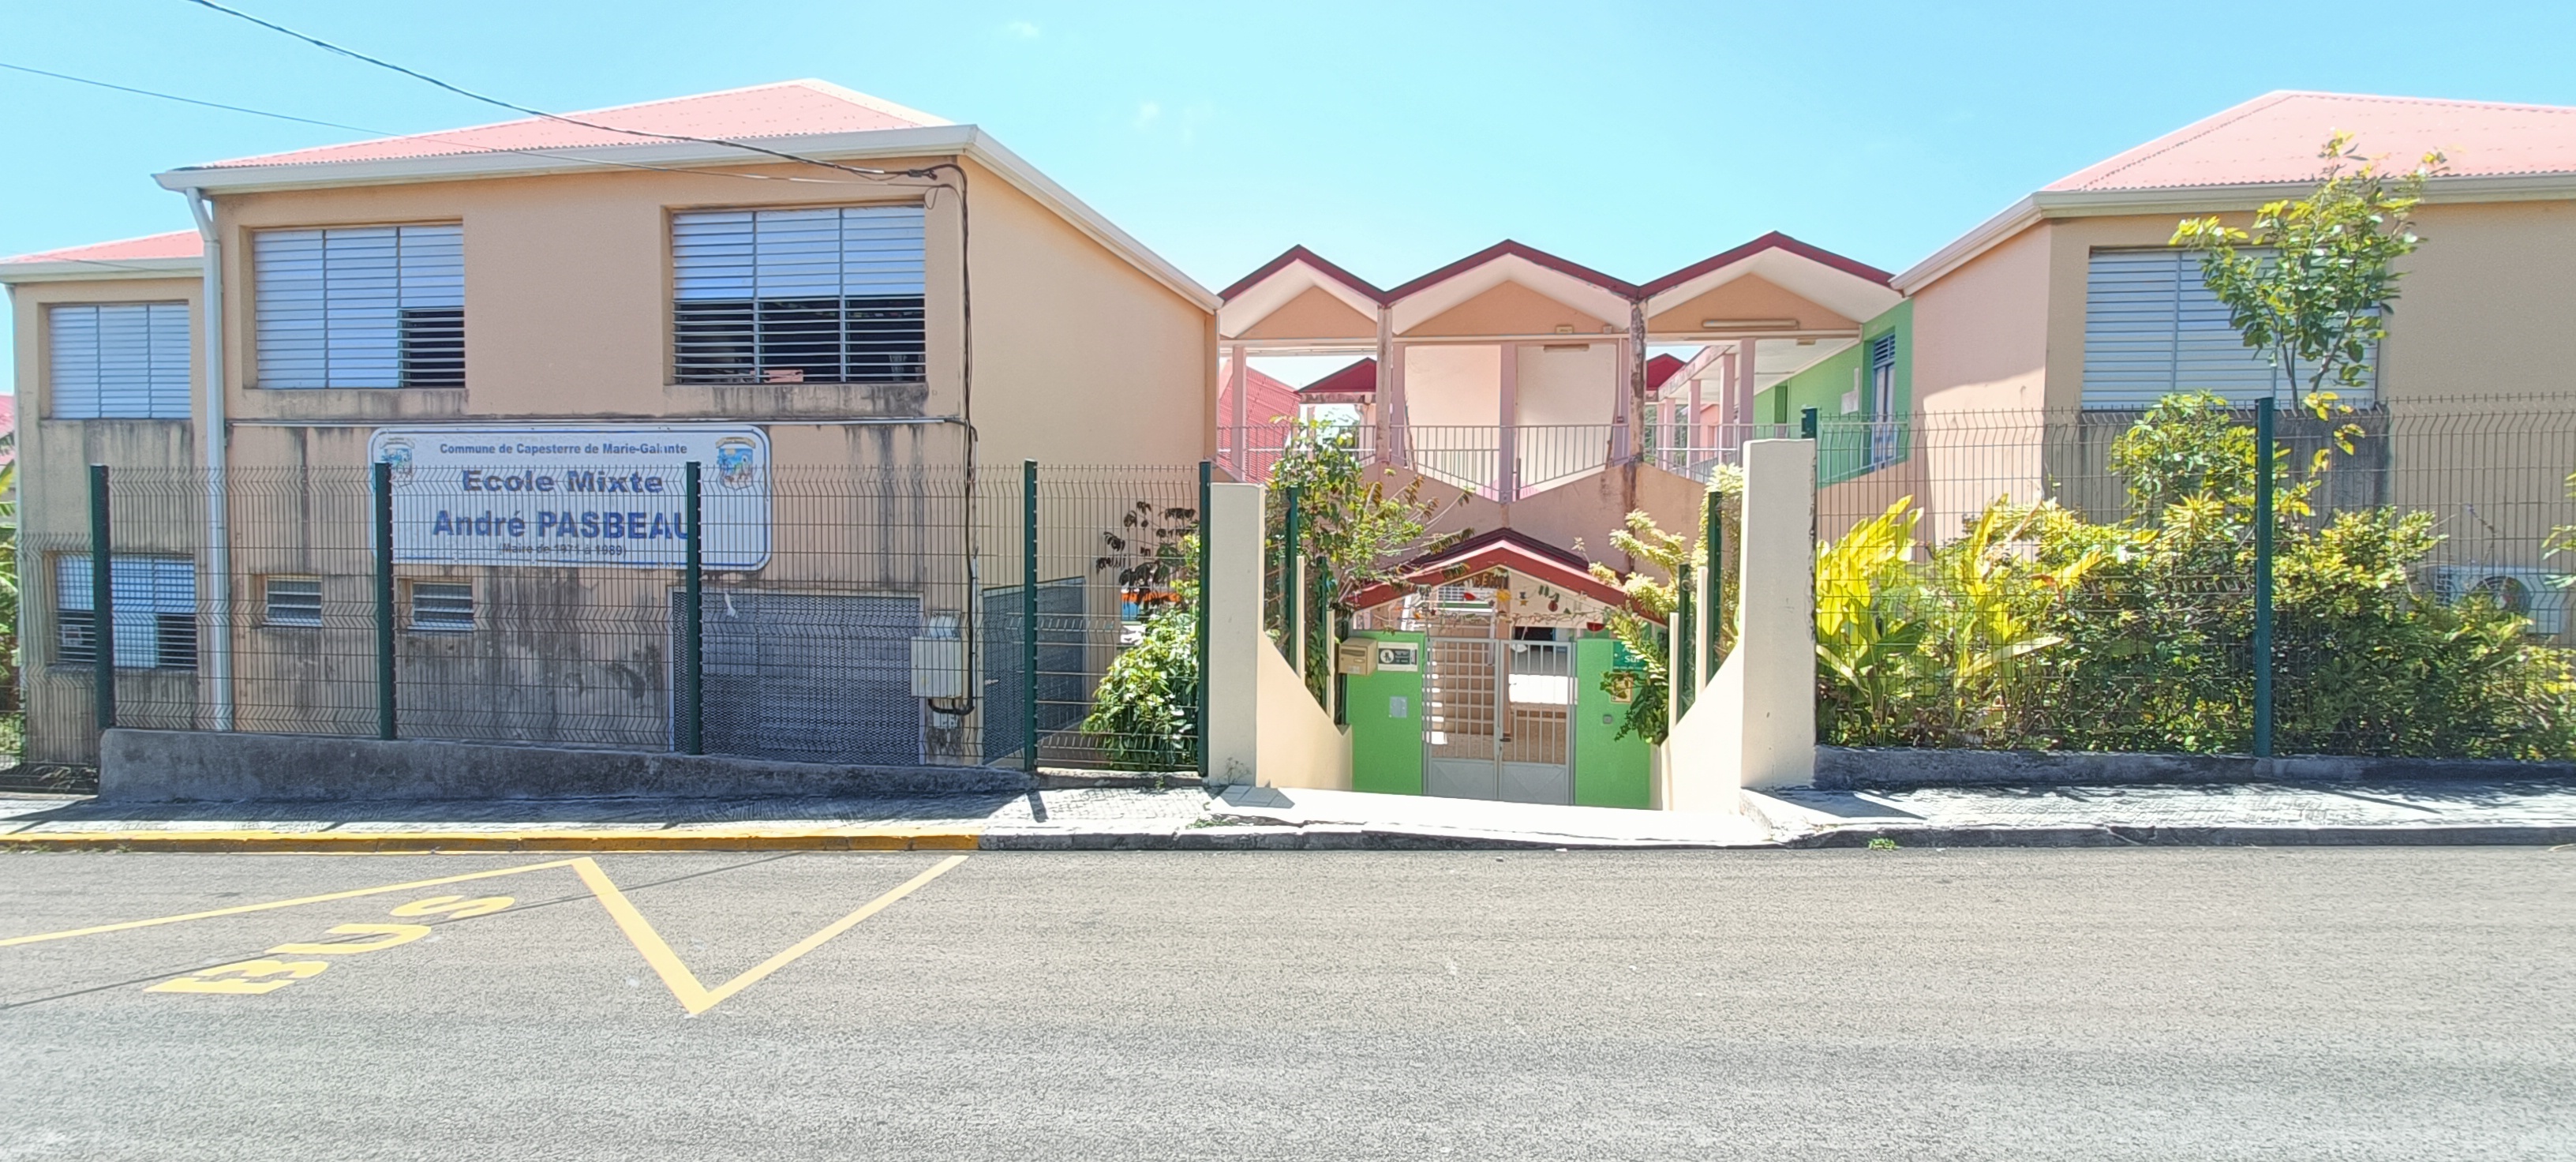 École primaire André PASBEAU.jpg